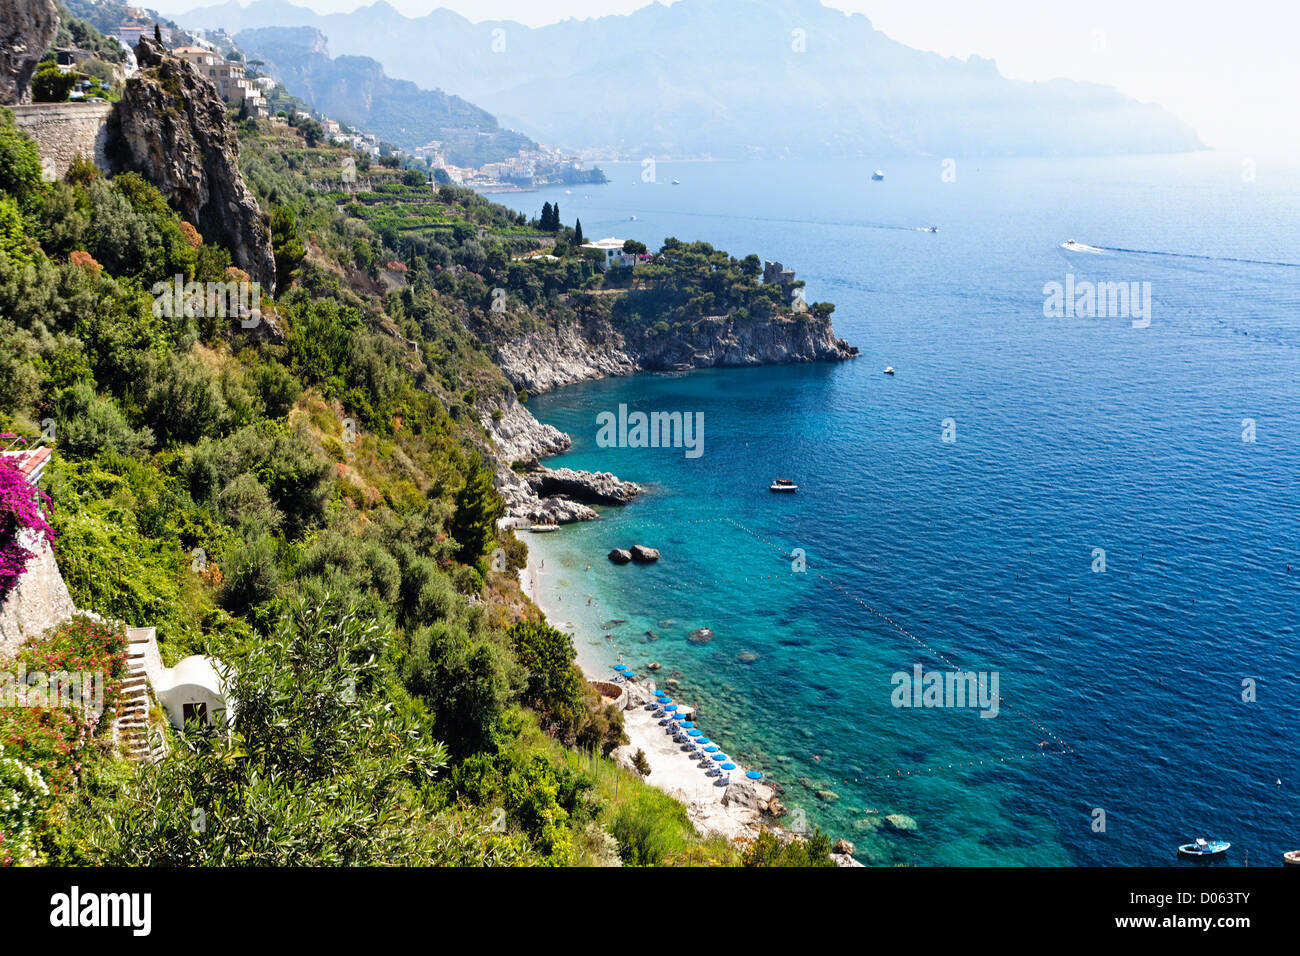 High Angle View of a Beach at the Amalfi Coast, Conca dei Marini, Campania, Italy Stock Photo